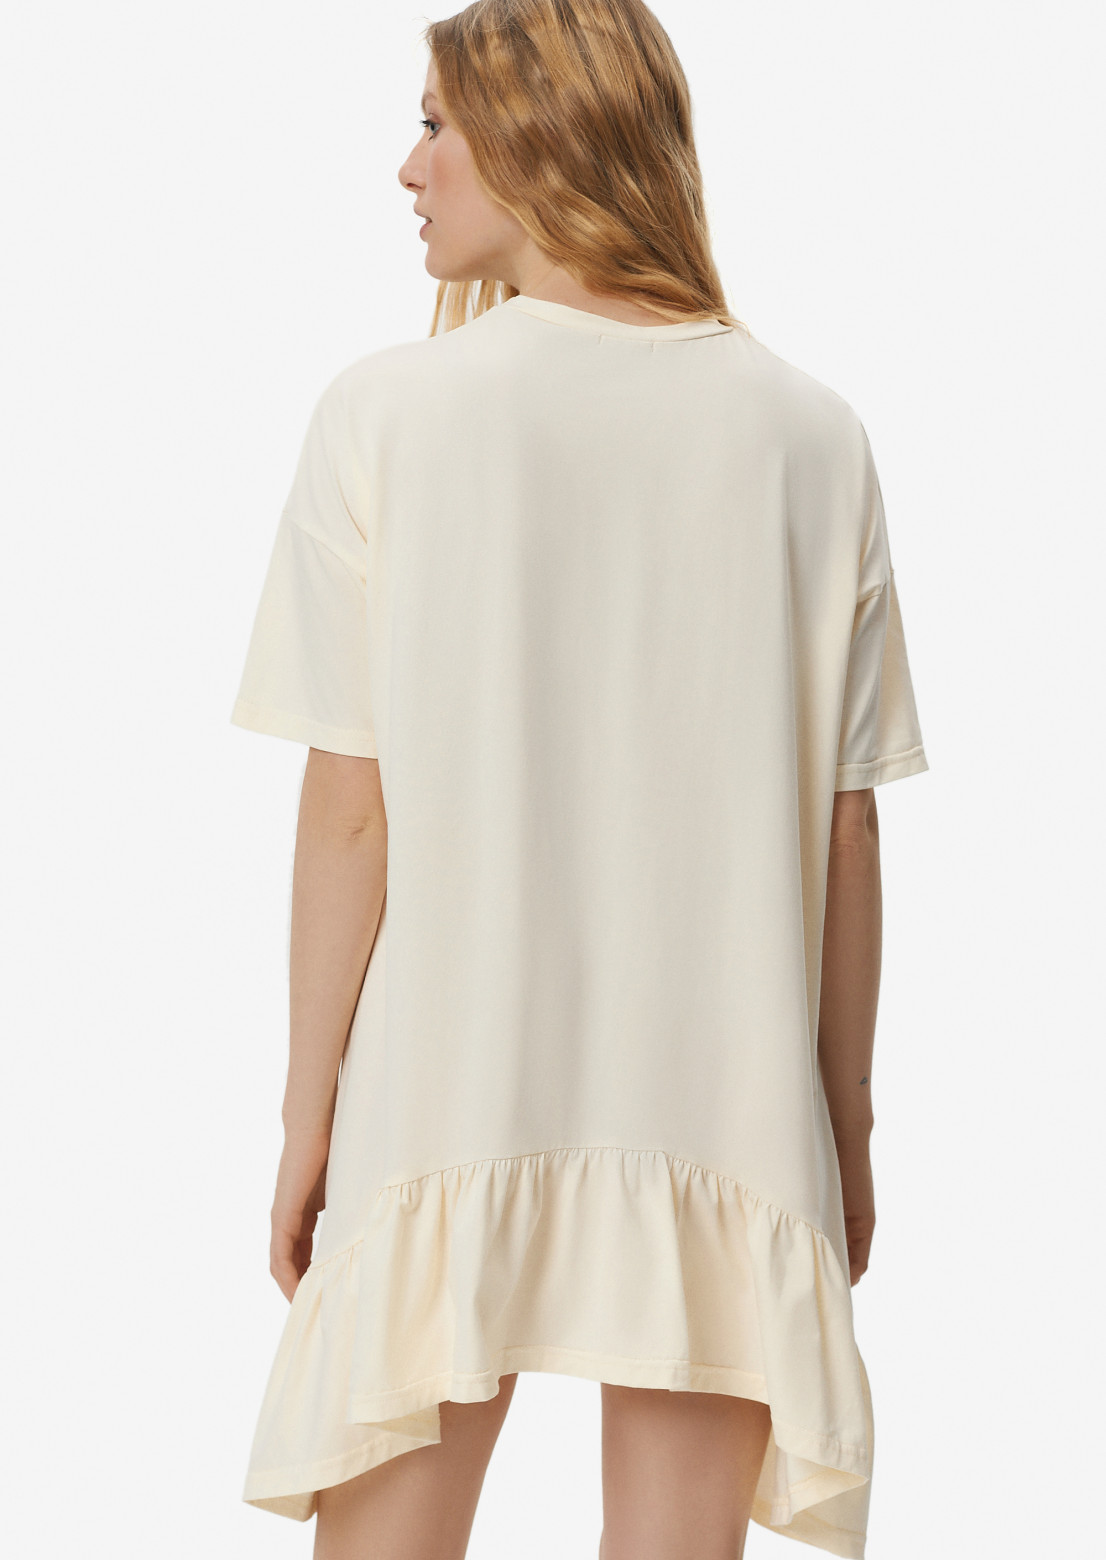 Плаття-футболка з асиметричним воланом шампань